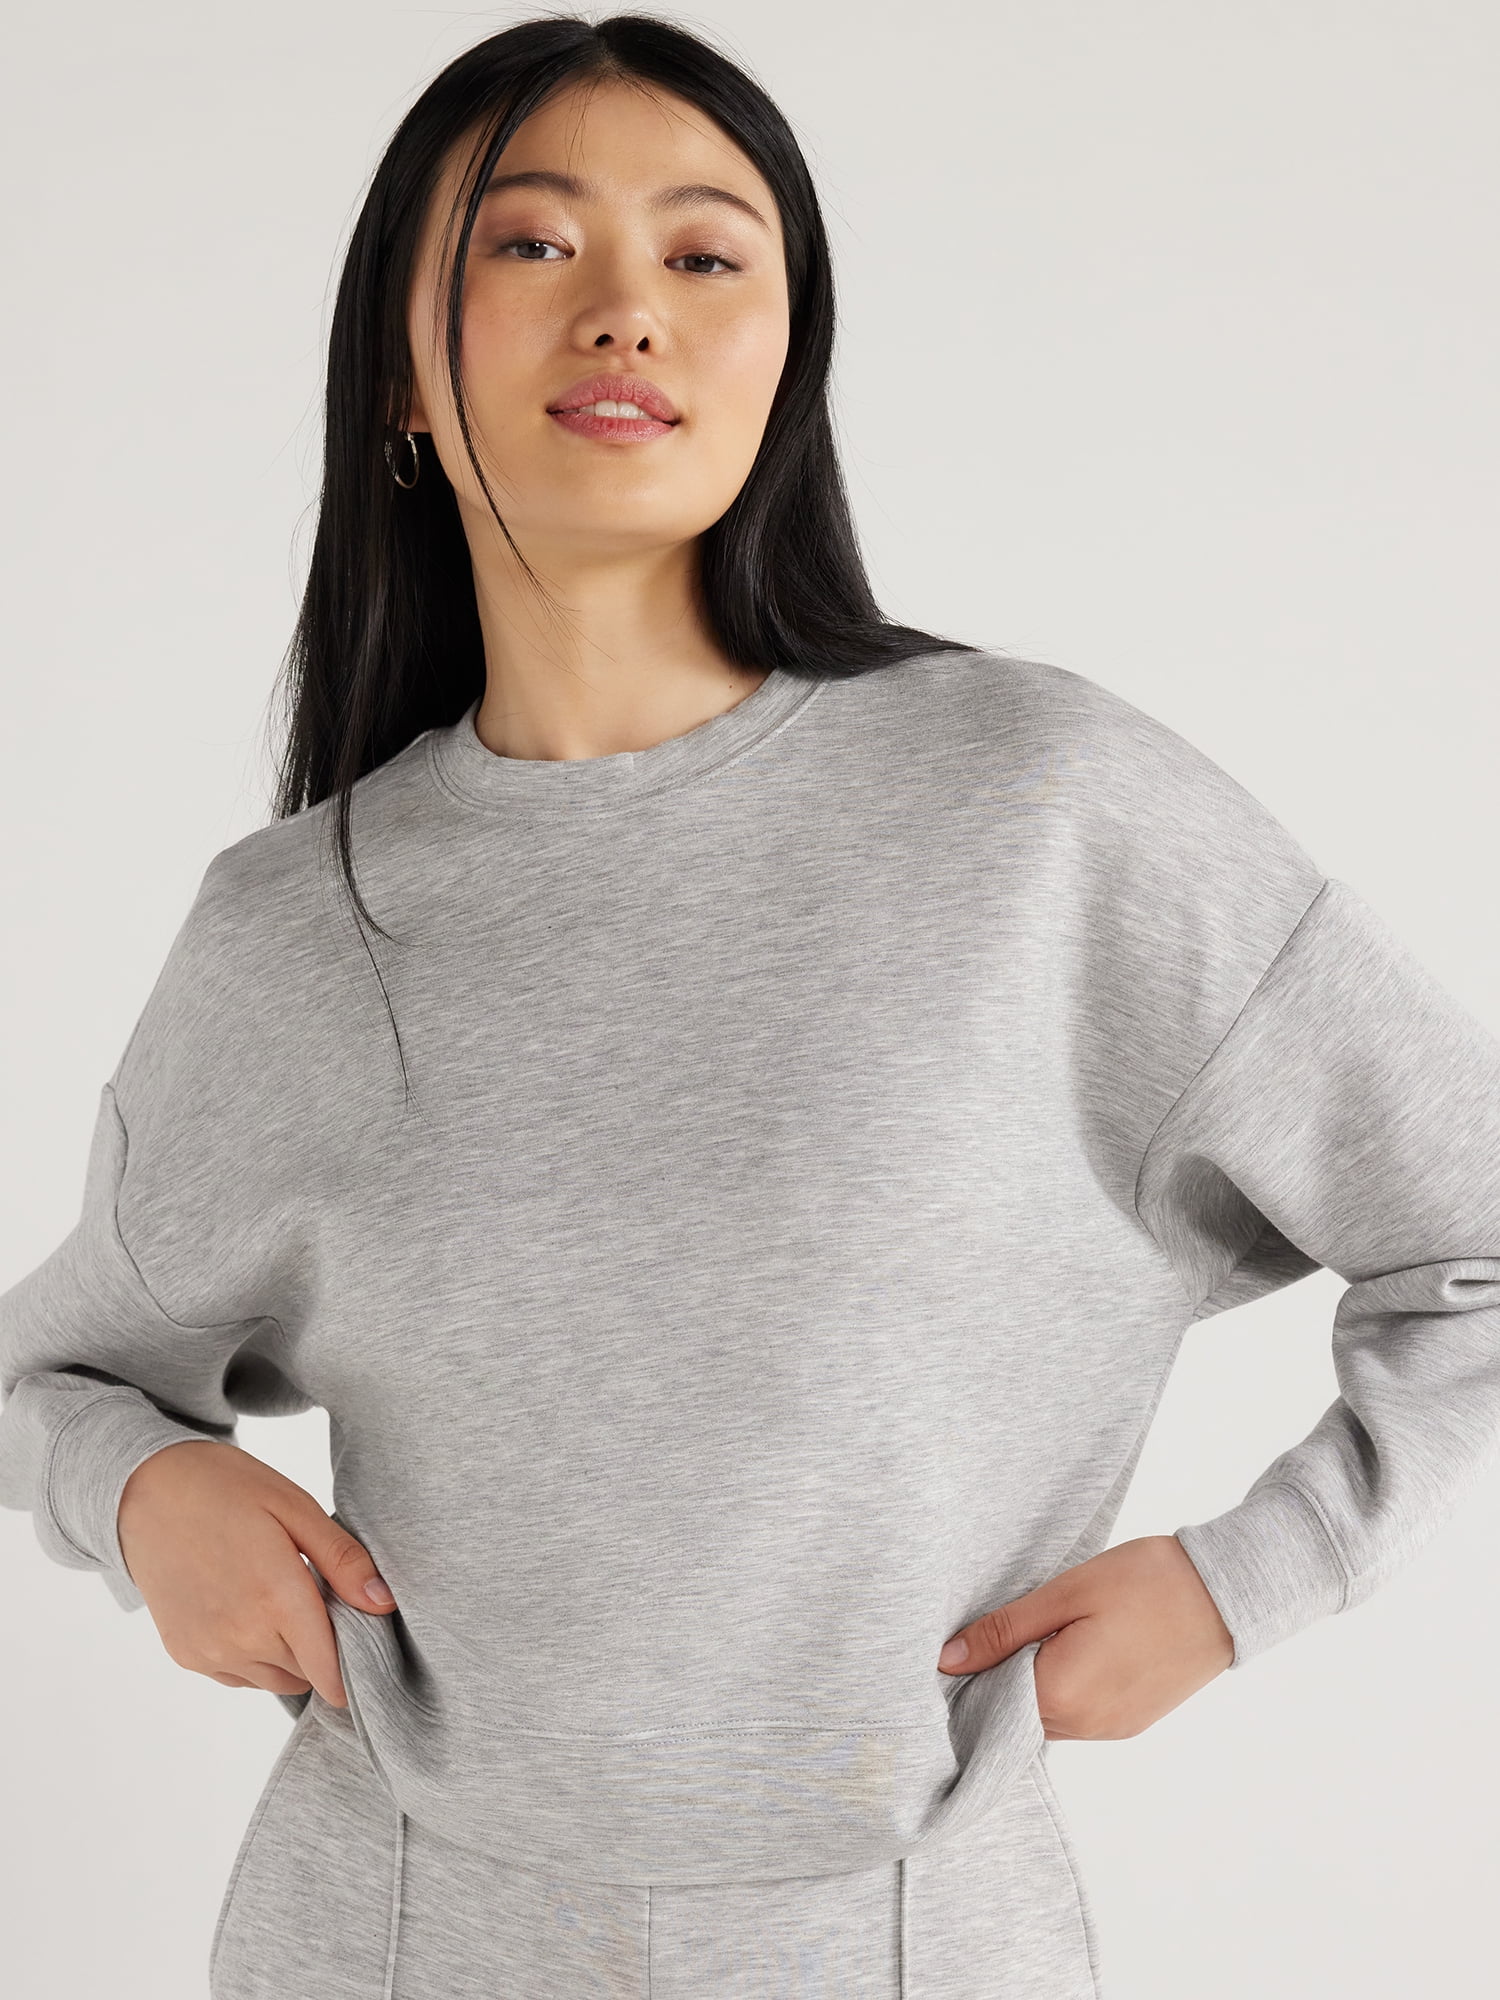 Scoop Women's Scuba Knit Cropped Sweatshirt with Drop Sleeves